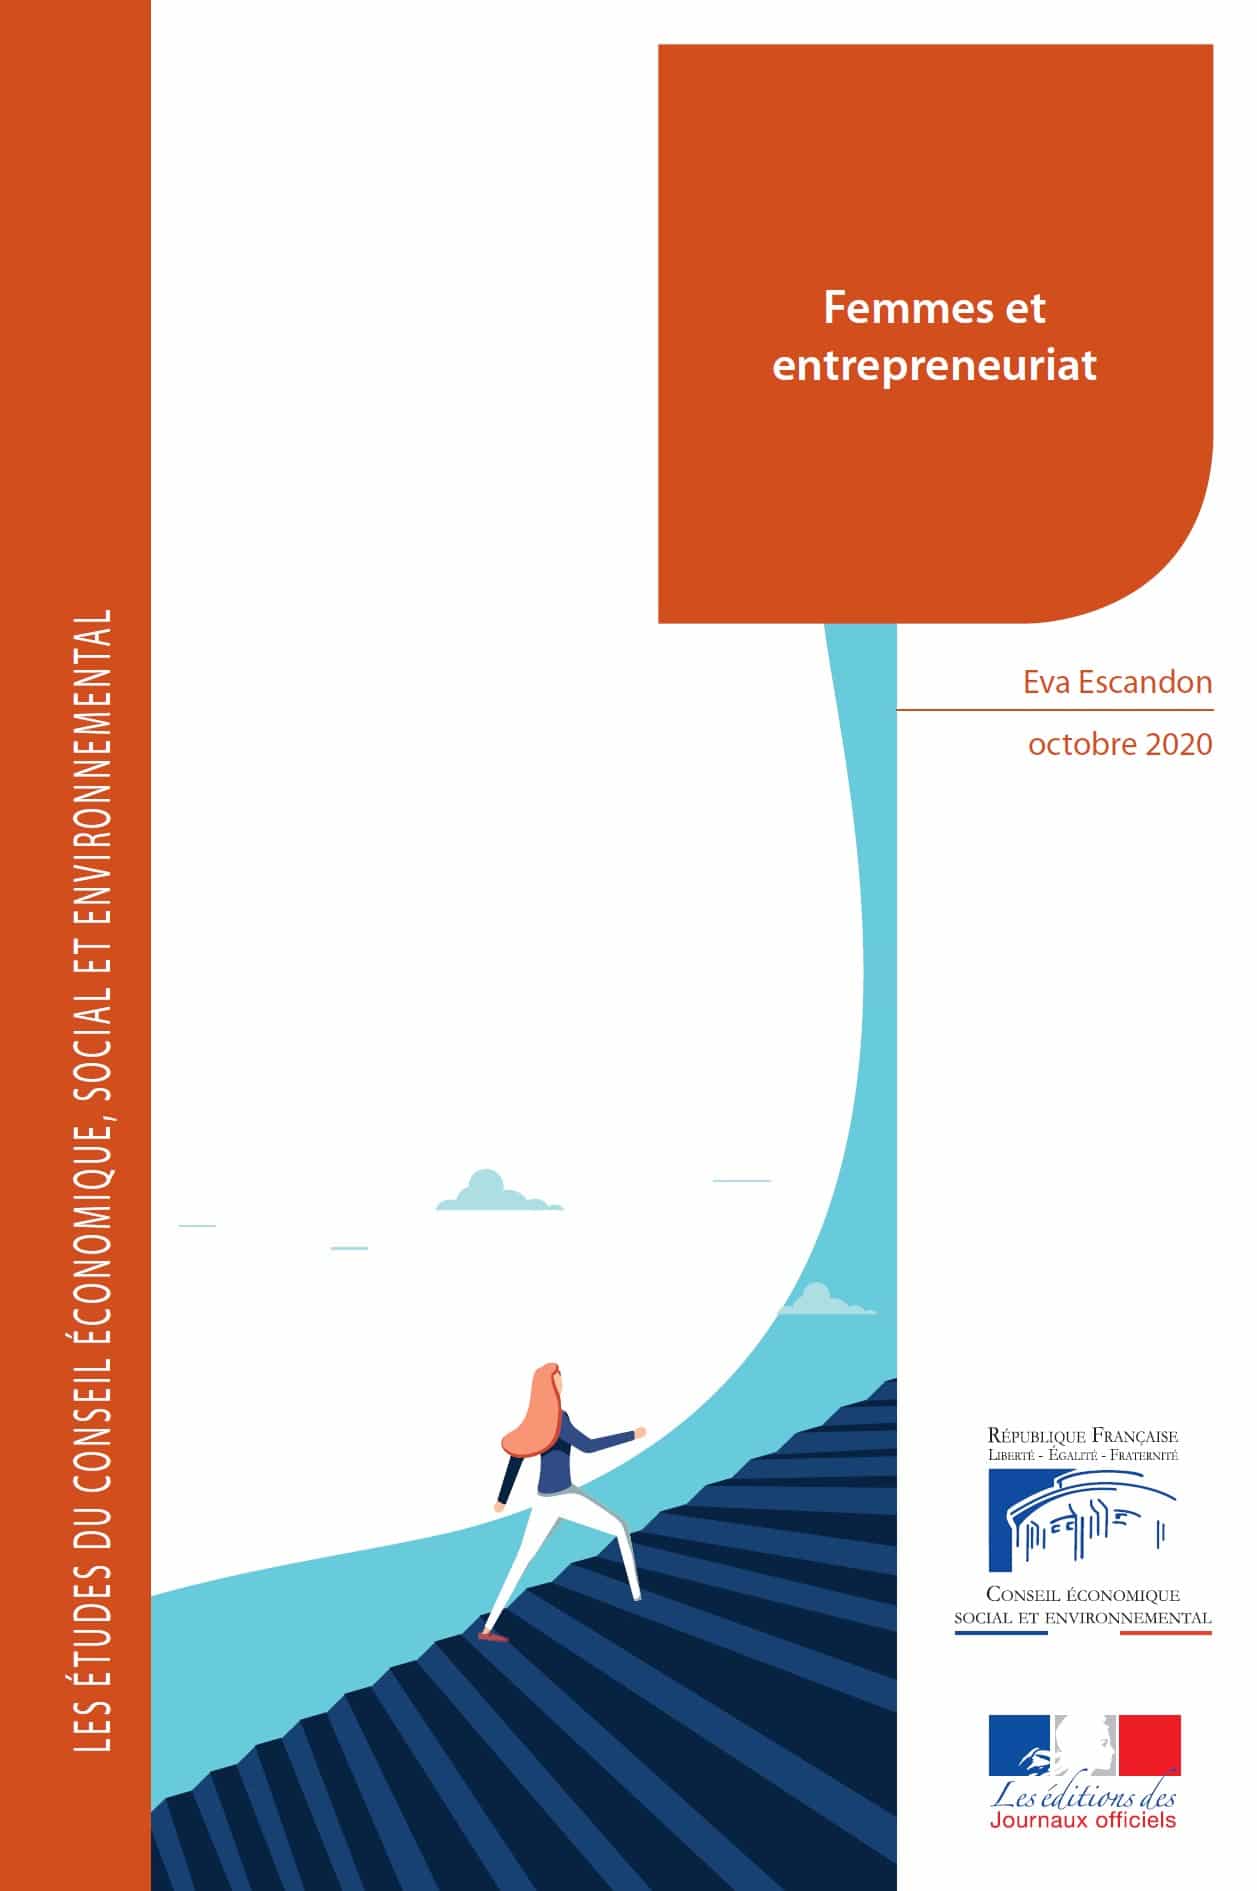 Le Conseil économique, social et environnemental (Cese) vient de mettre en ligne une étude approfondie sur l’entrepreneuriat des femmes, avec des constats récurrents mais aussi des propositions...